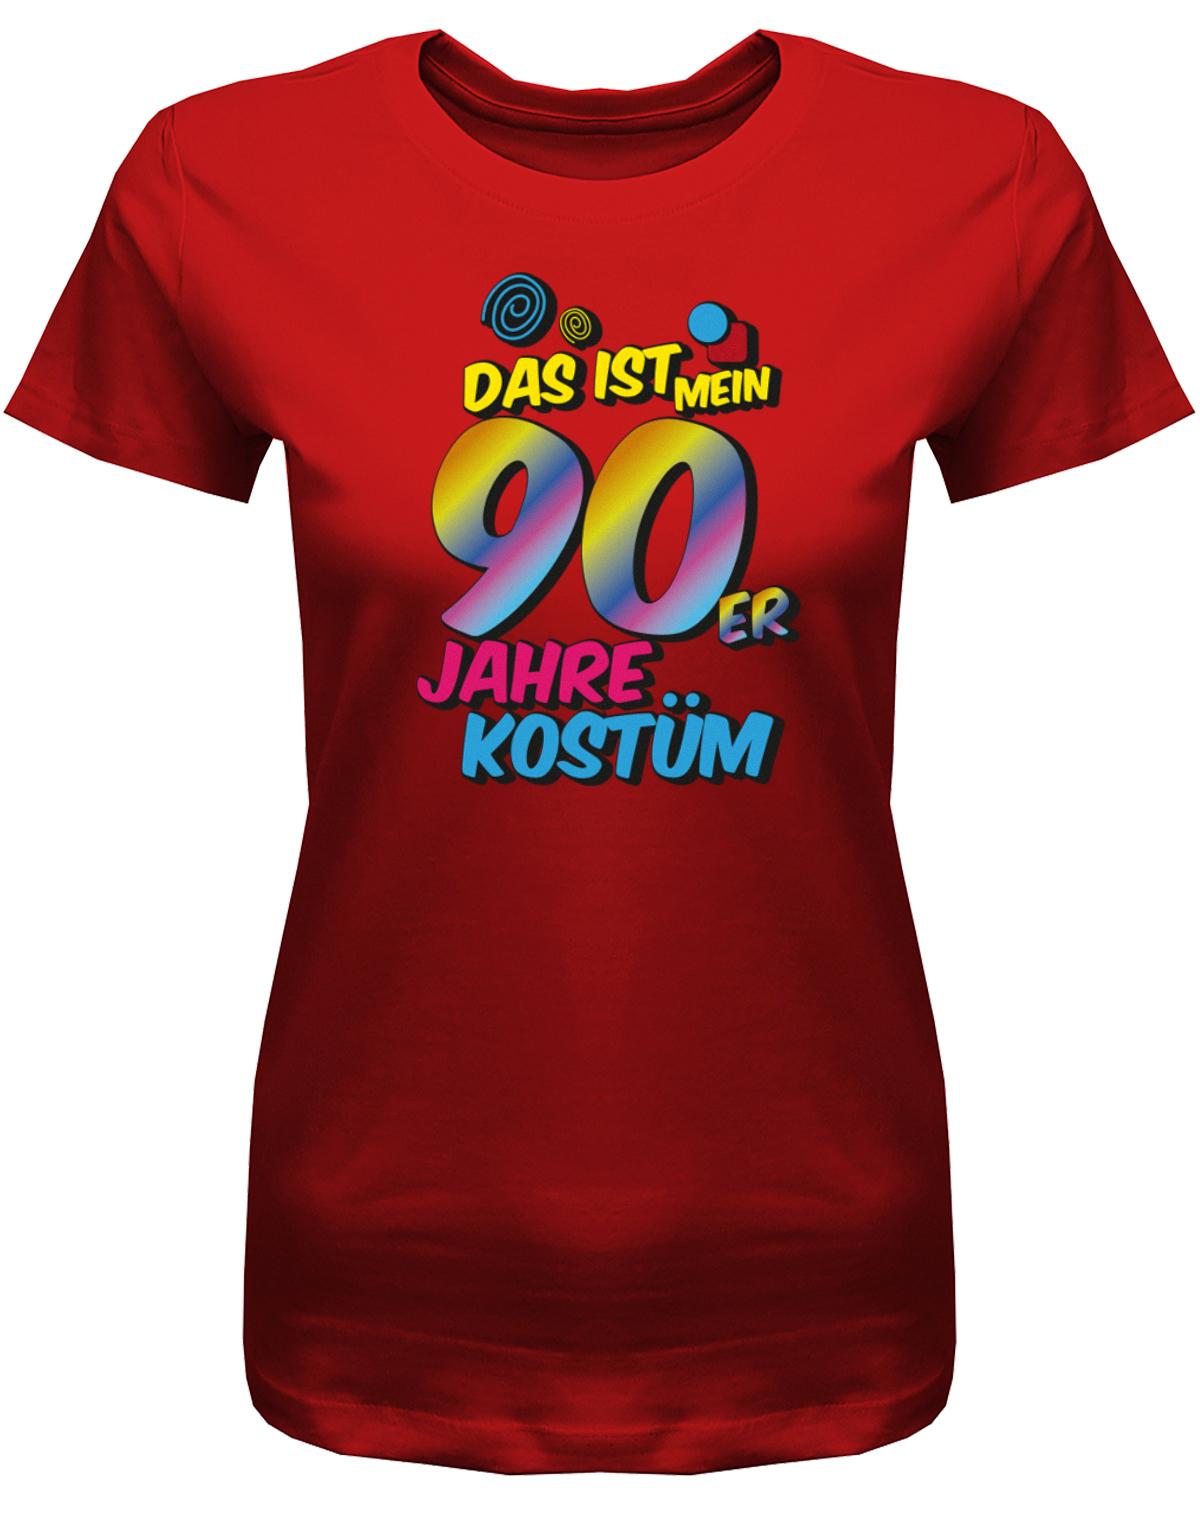 Das-ist-mein-90er-Jahre-Kost-m-Fasching-Karneval-Verkleidung-Shirt-Damen-Rot